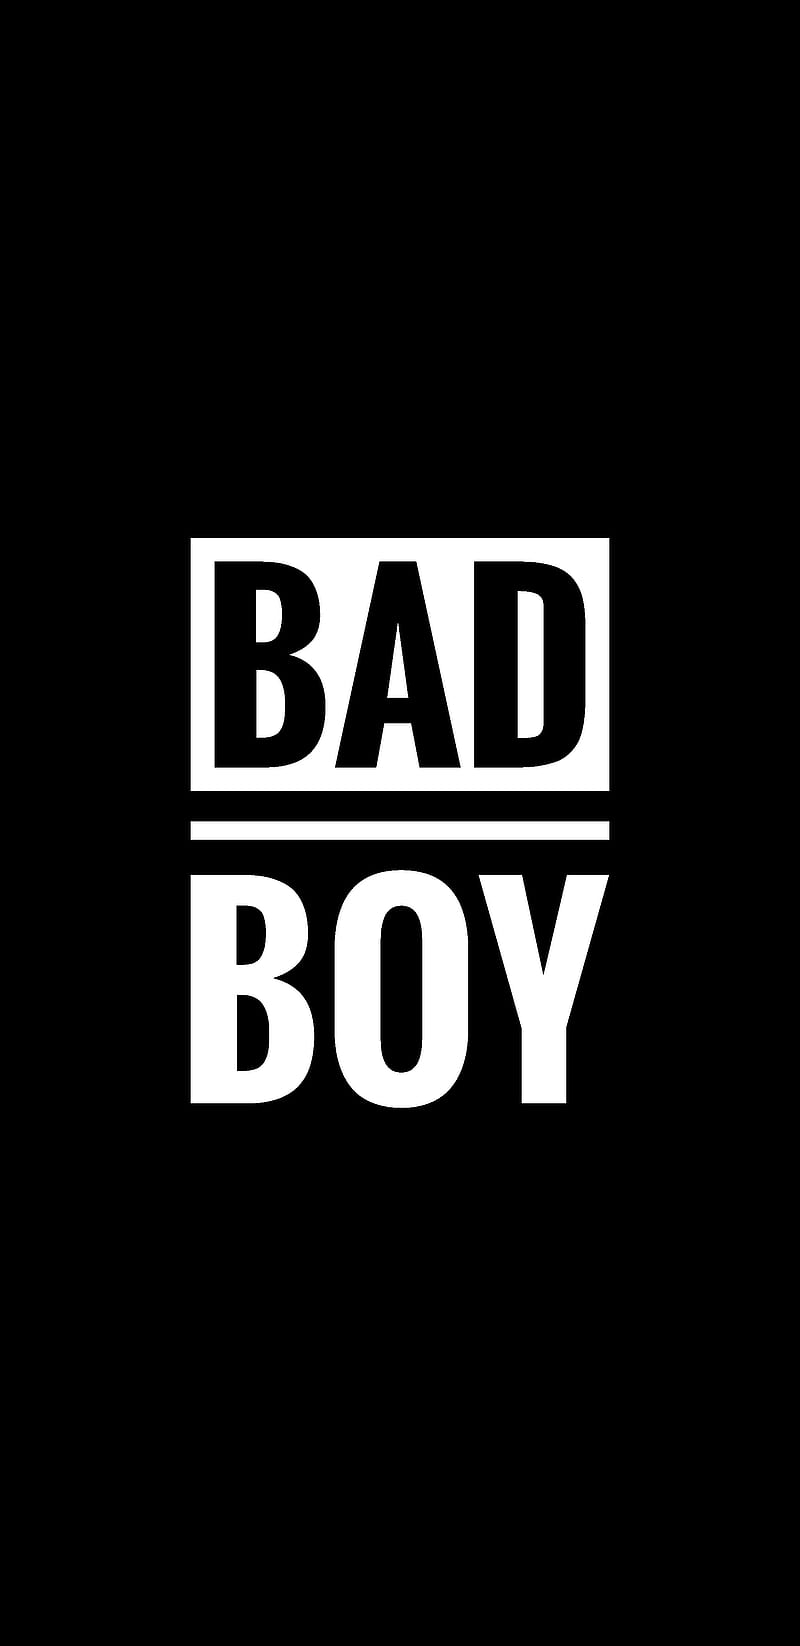 Bad boy pics hd